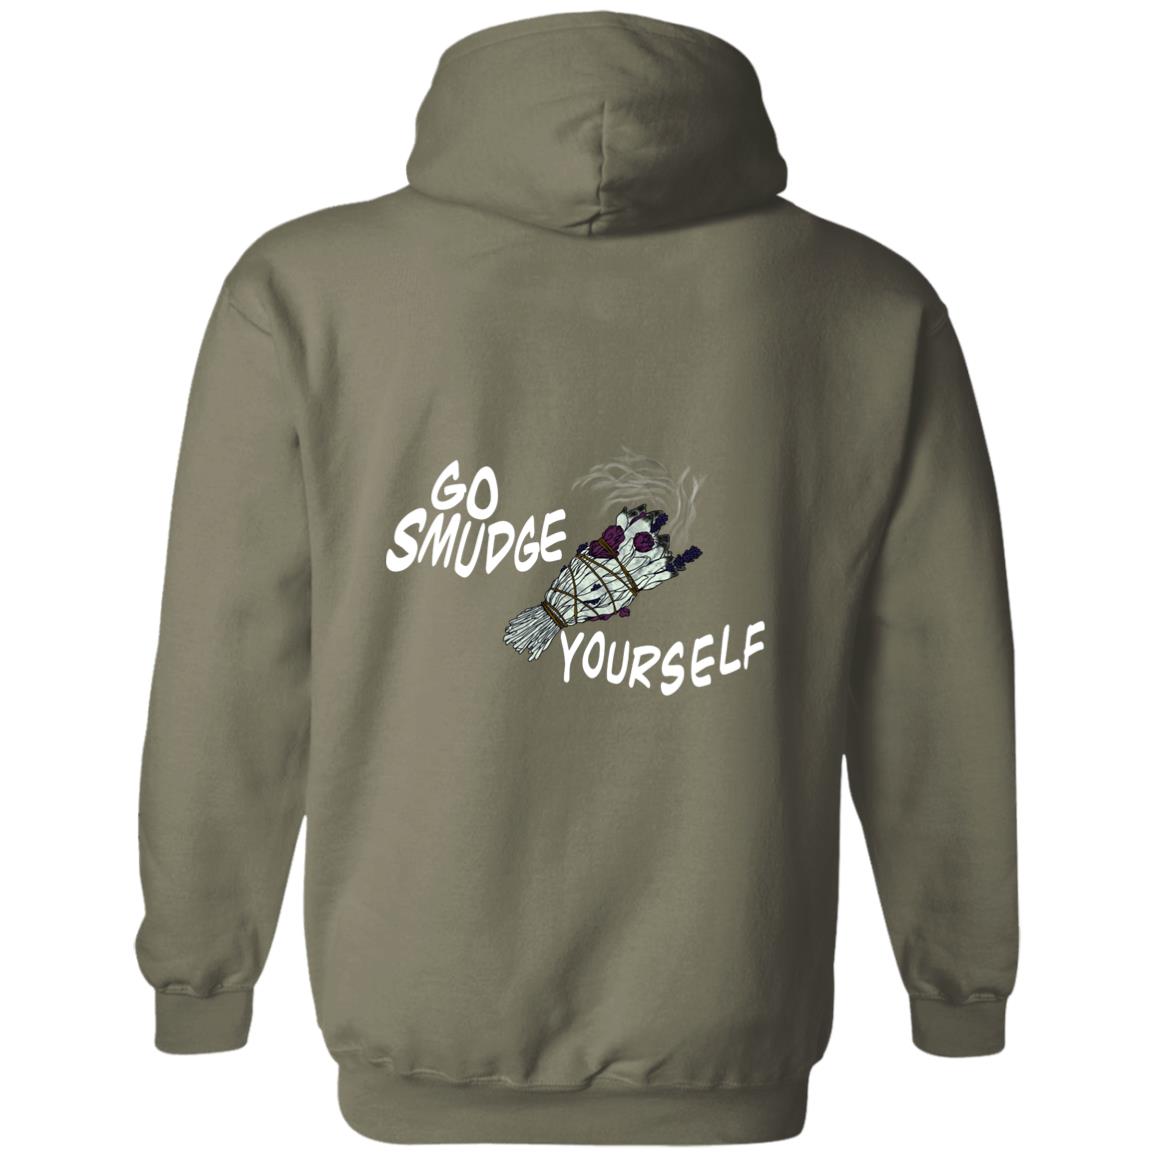 Go Smudge Yourself Sweatshirt